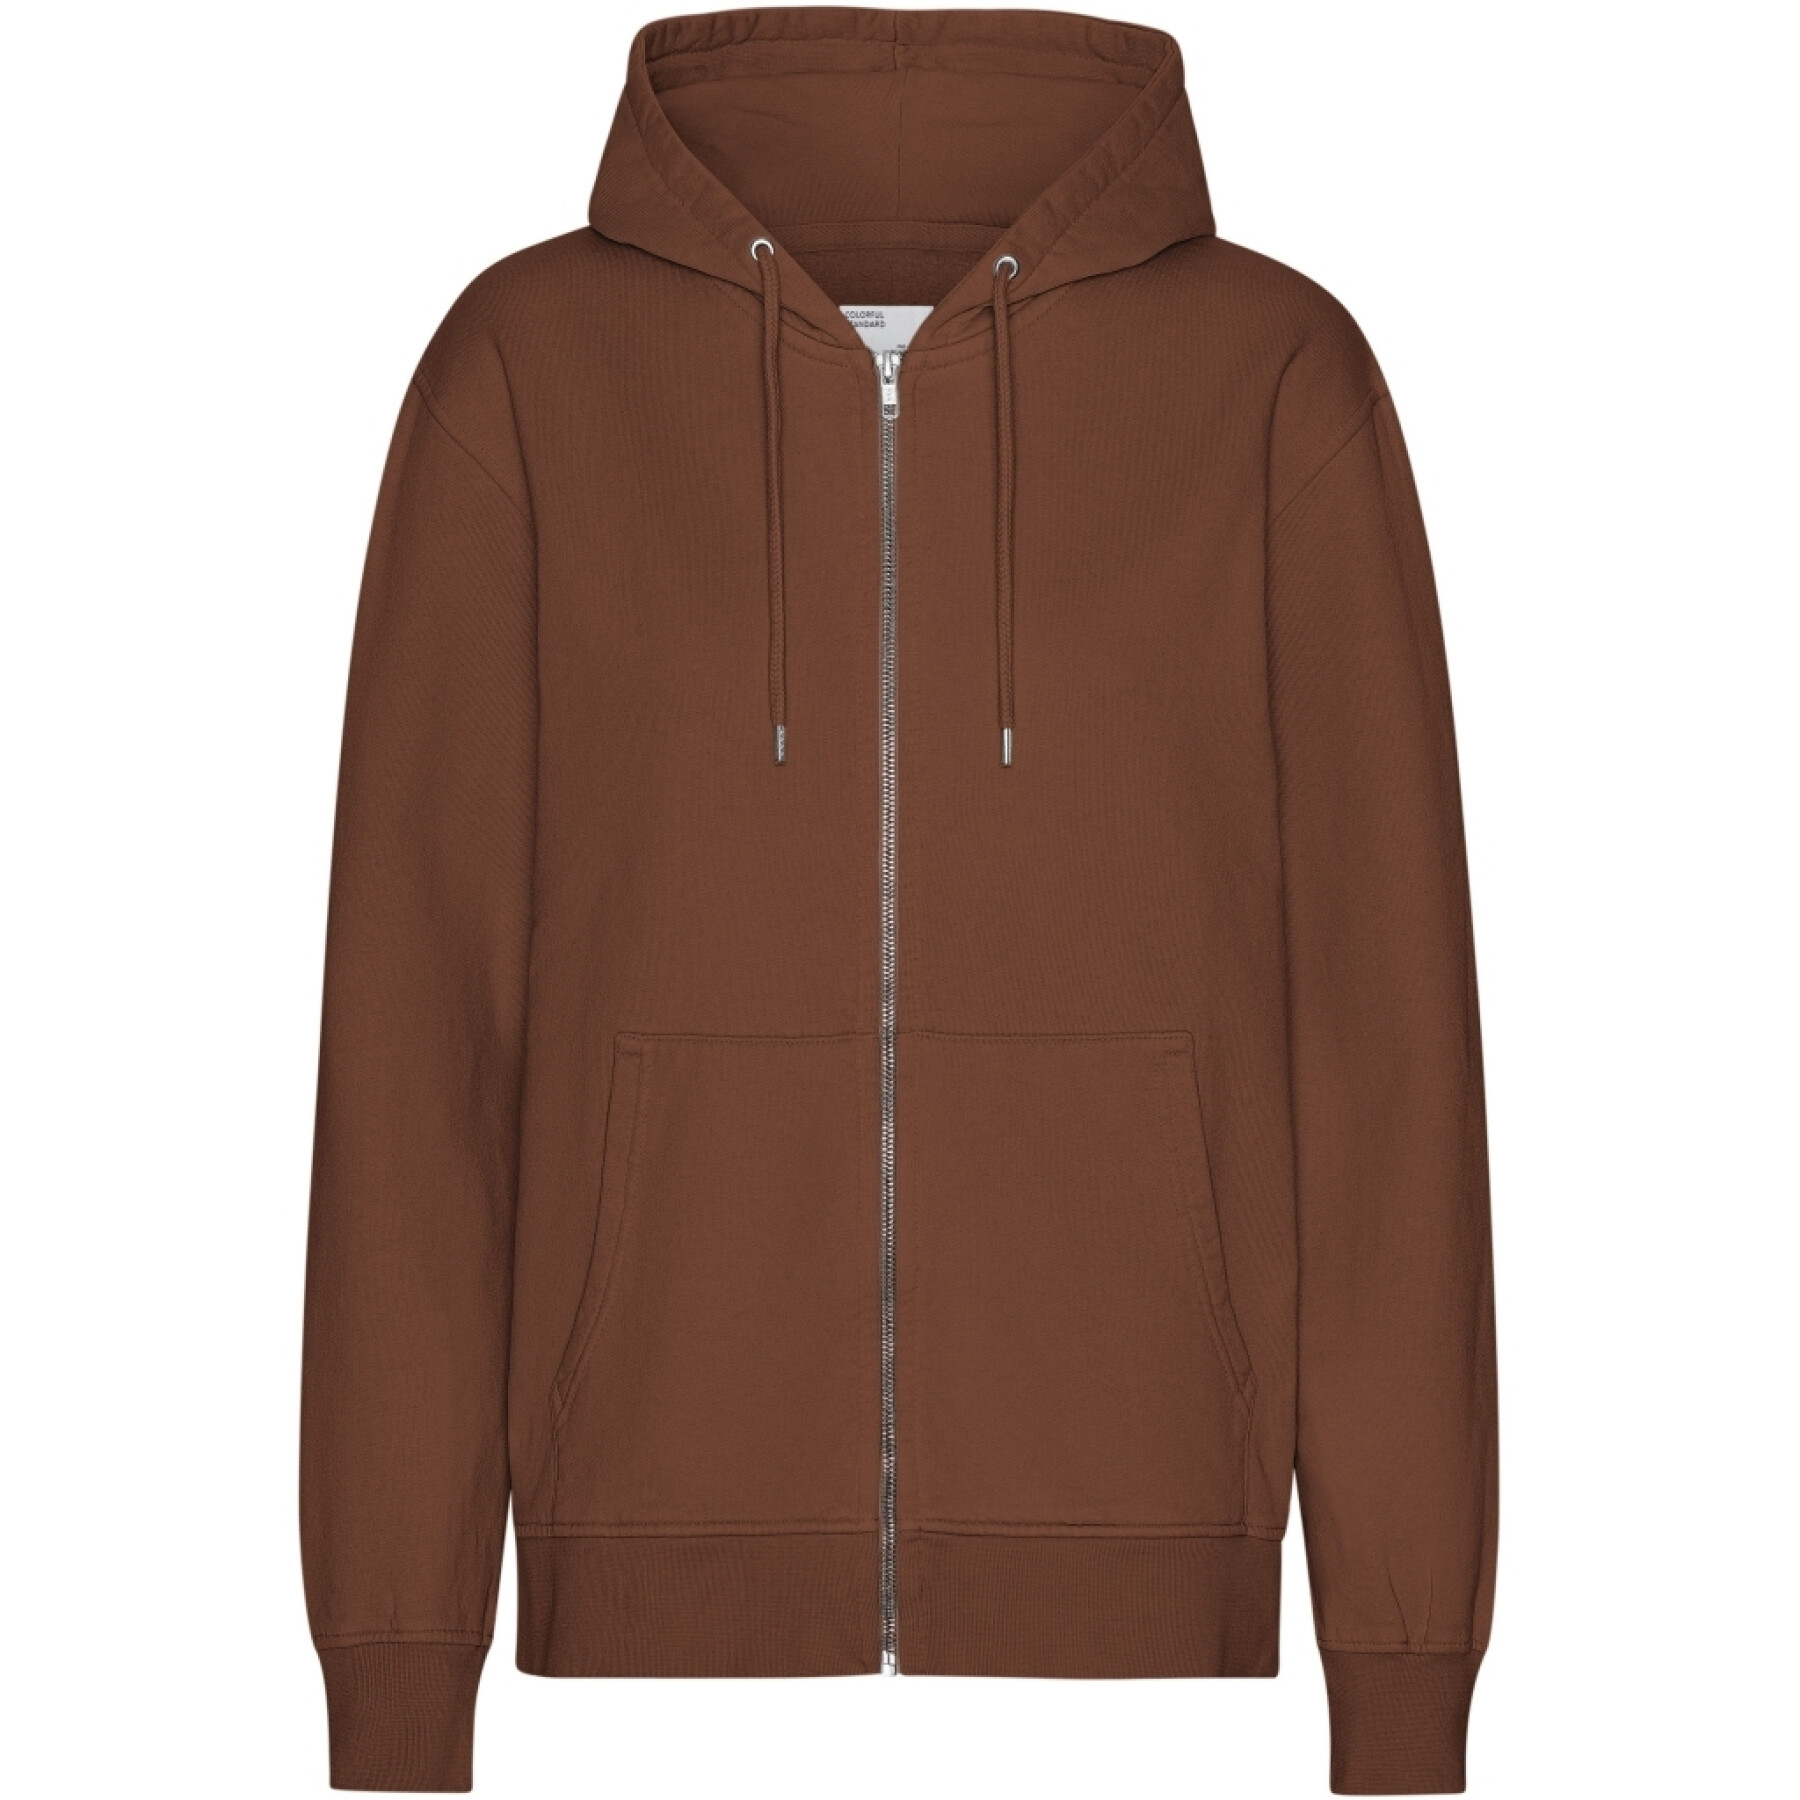 Hooded sweatshirt met rits Colorful Standard Classic Organic Cinnamon Brown